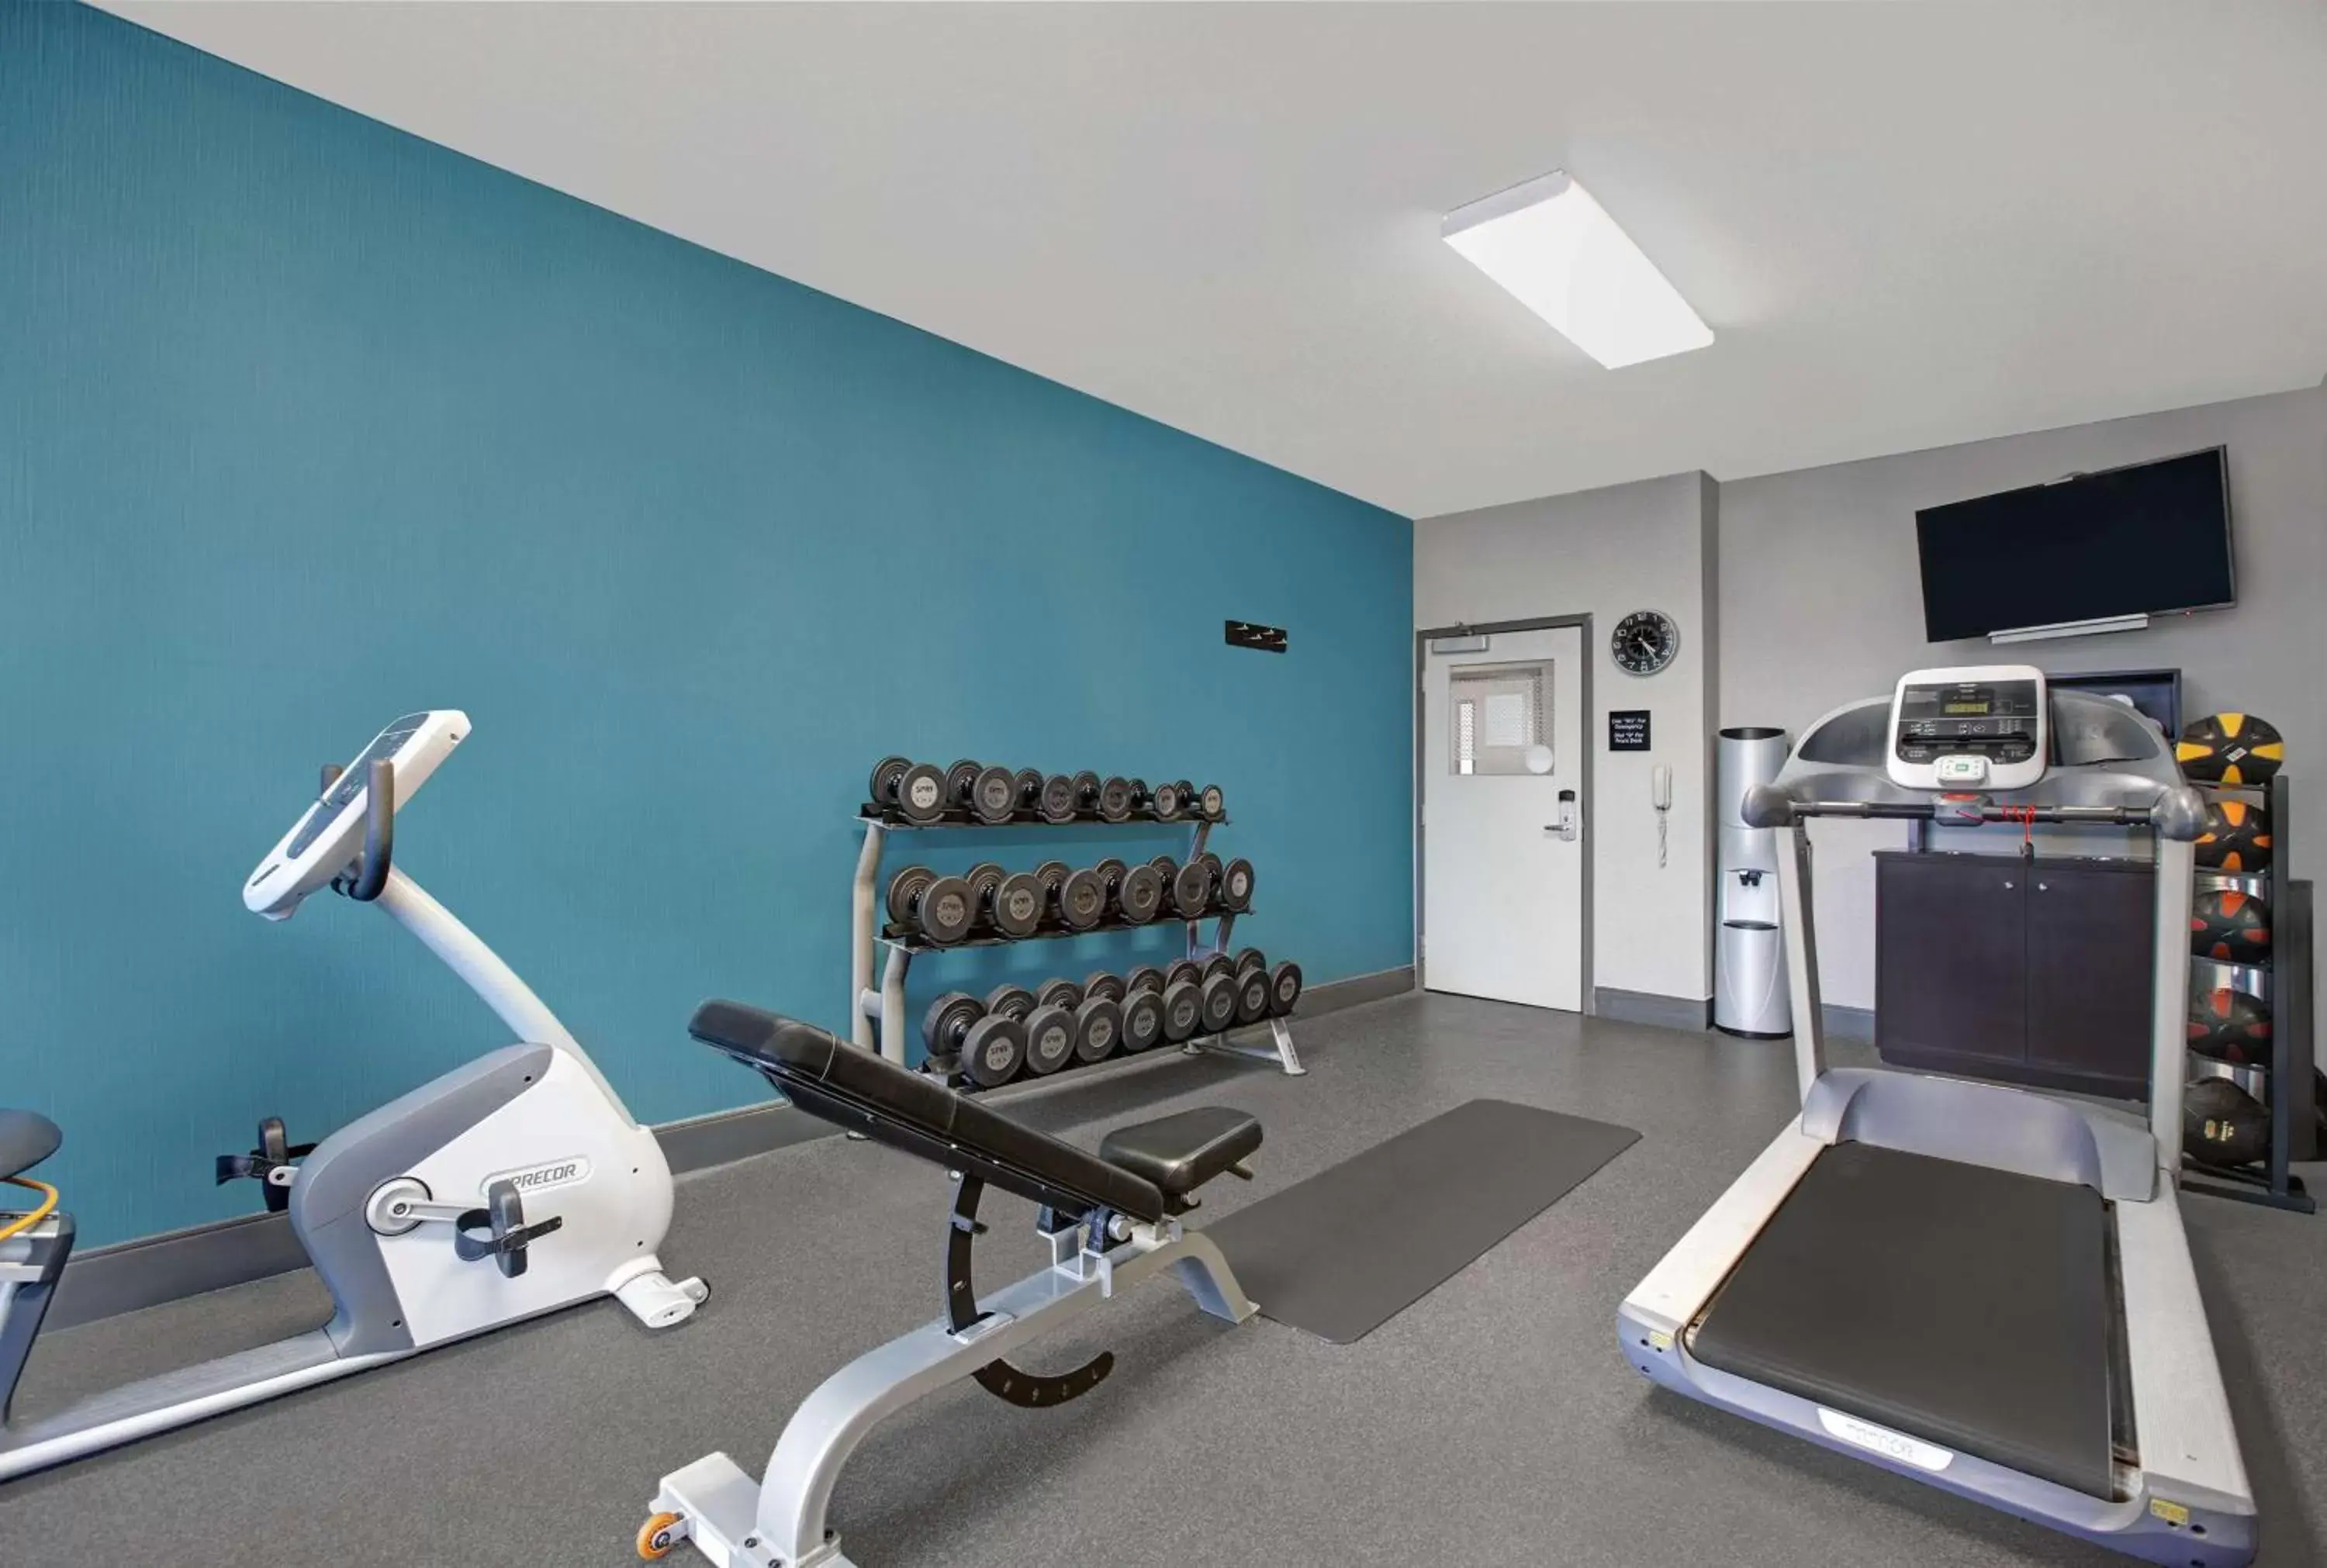 Fitness centre/facilities, Fitness Center/Facilities in Hampton Inn Keokuk